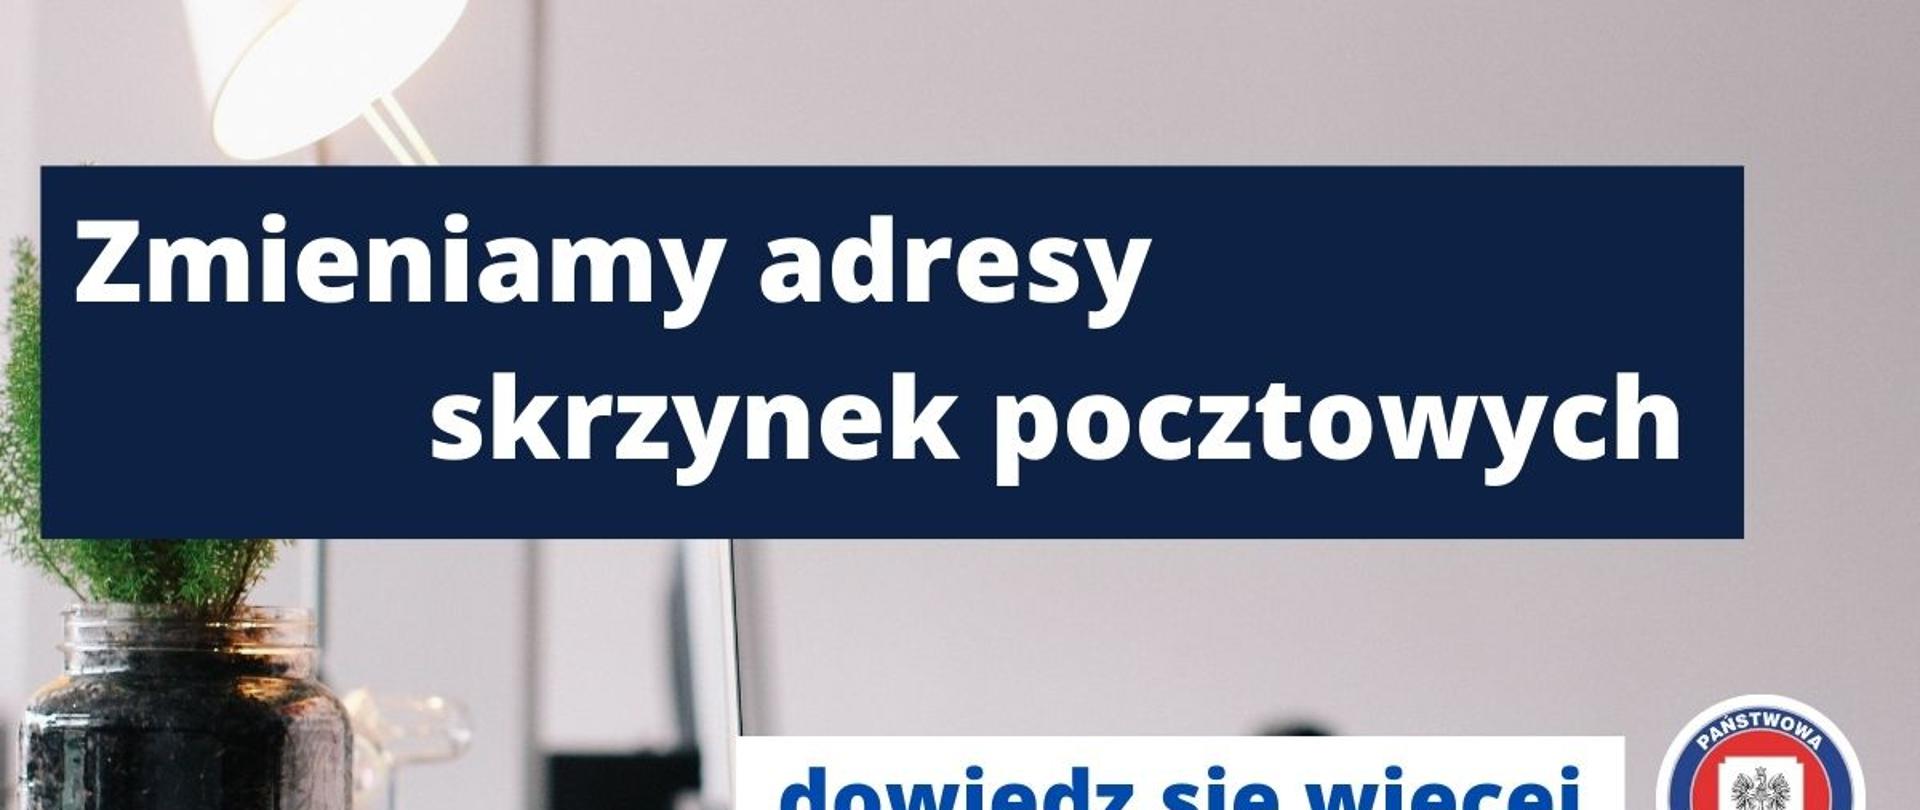 Od 14 czerwca 2022 r. nowa domena pocztowa Państwowej Inspekcji Sanitarnej: @sanepid.gov.pl. Dotychczasowe domeny zostają wyłączone i nie będą już aktywne.